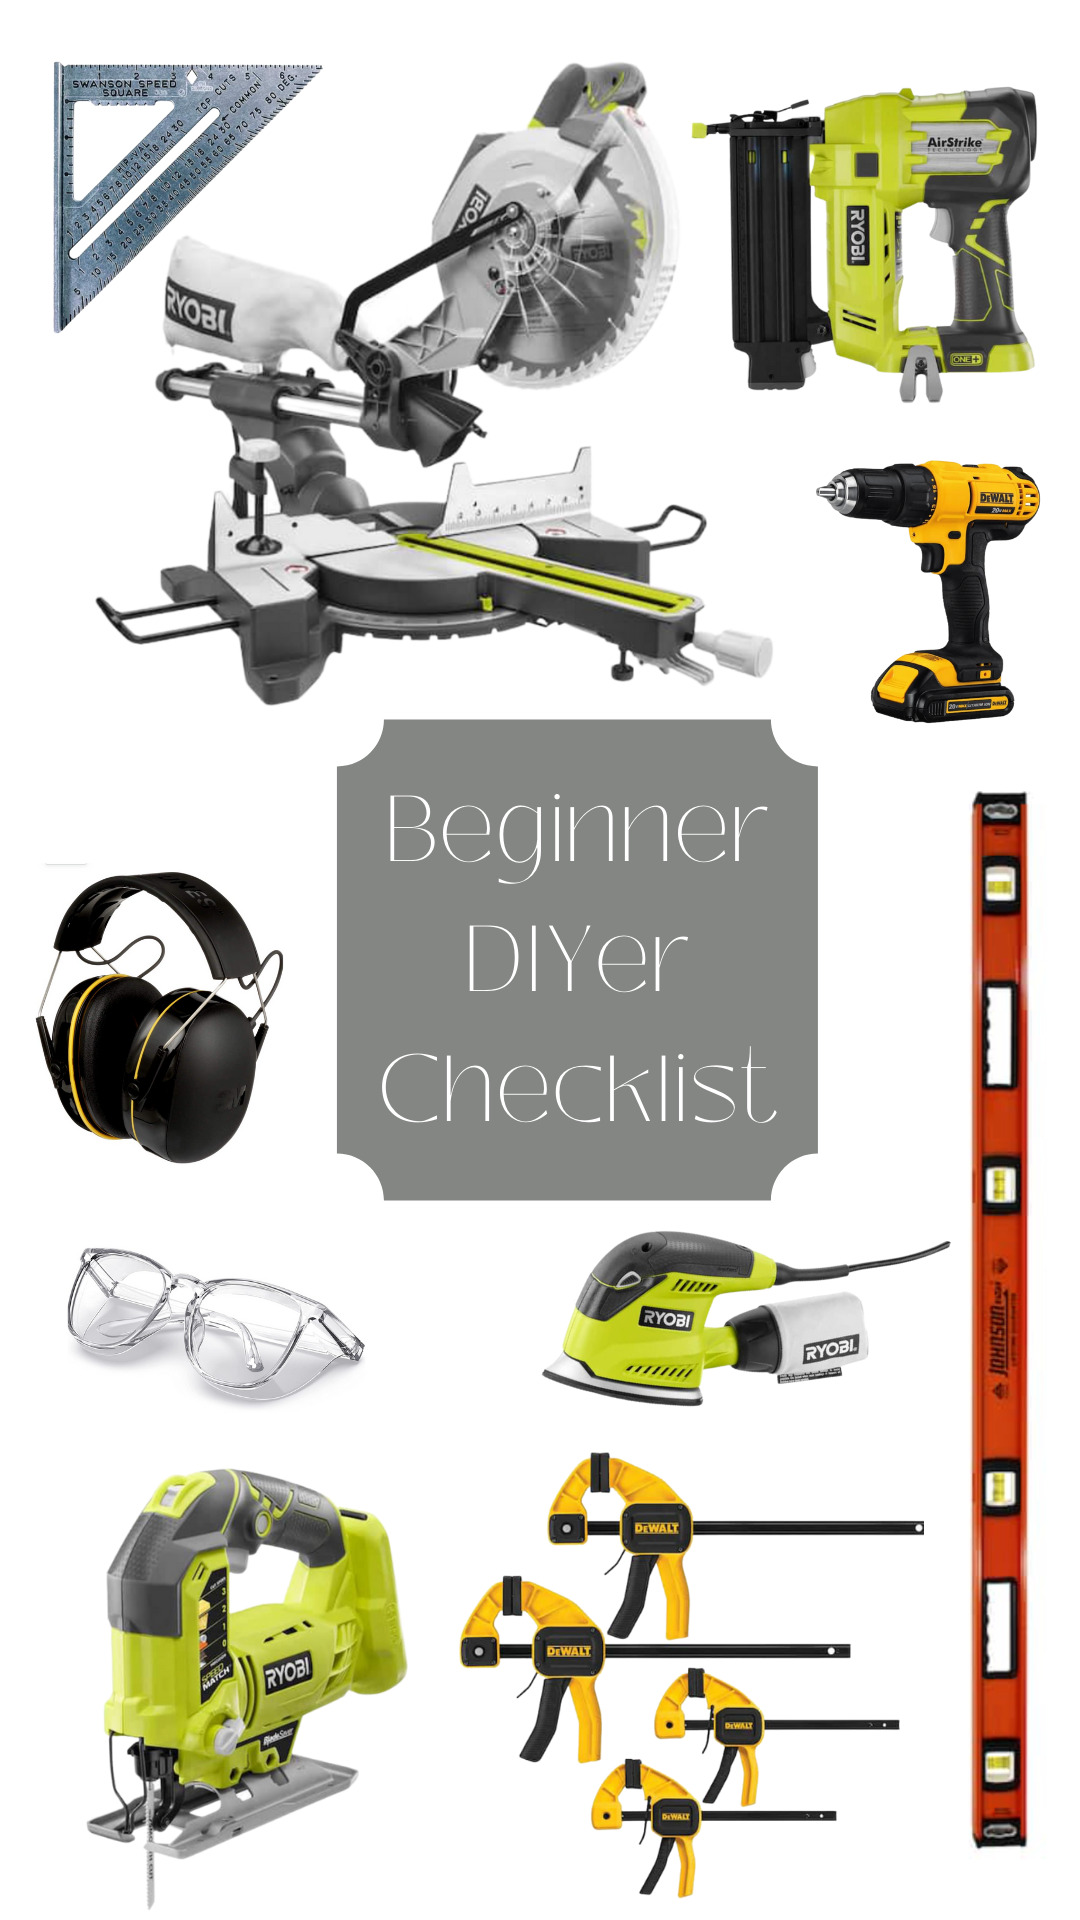 Beginner DIYer Checklist